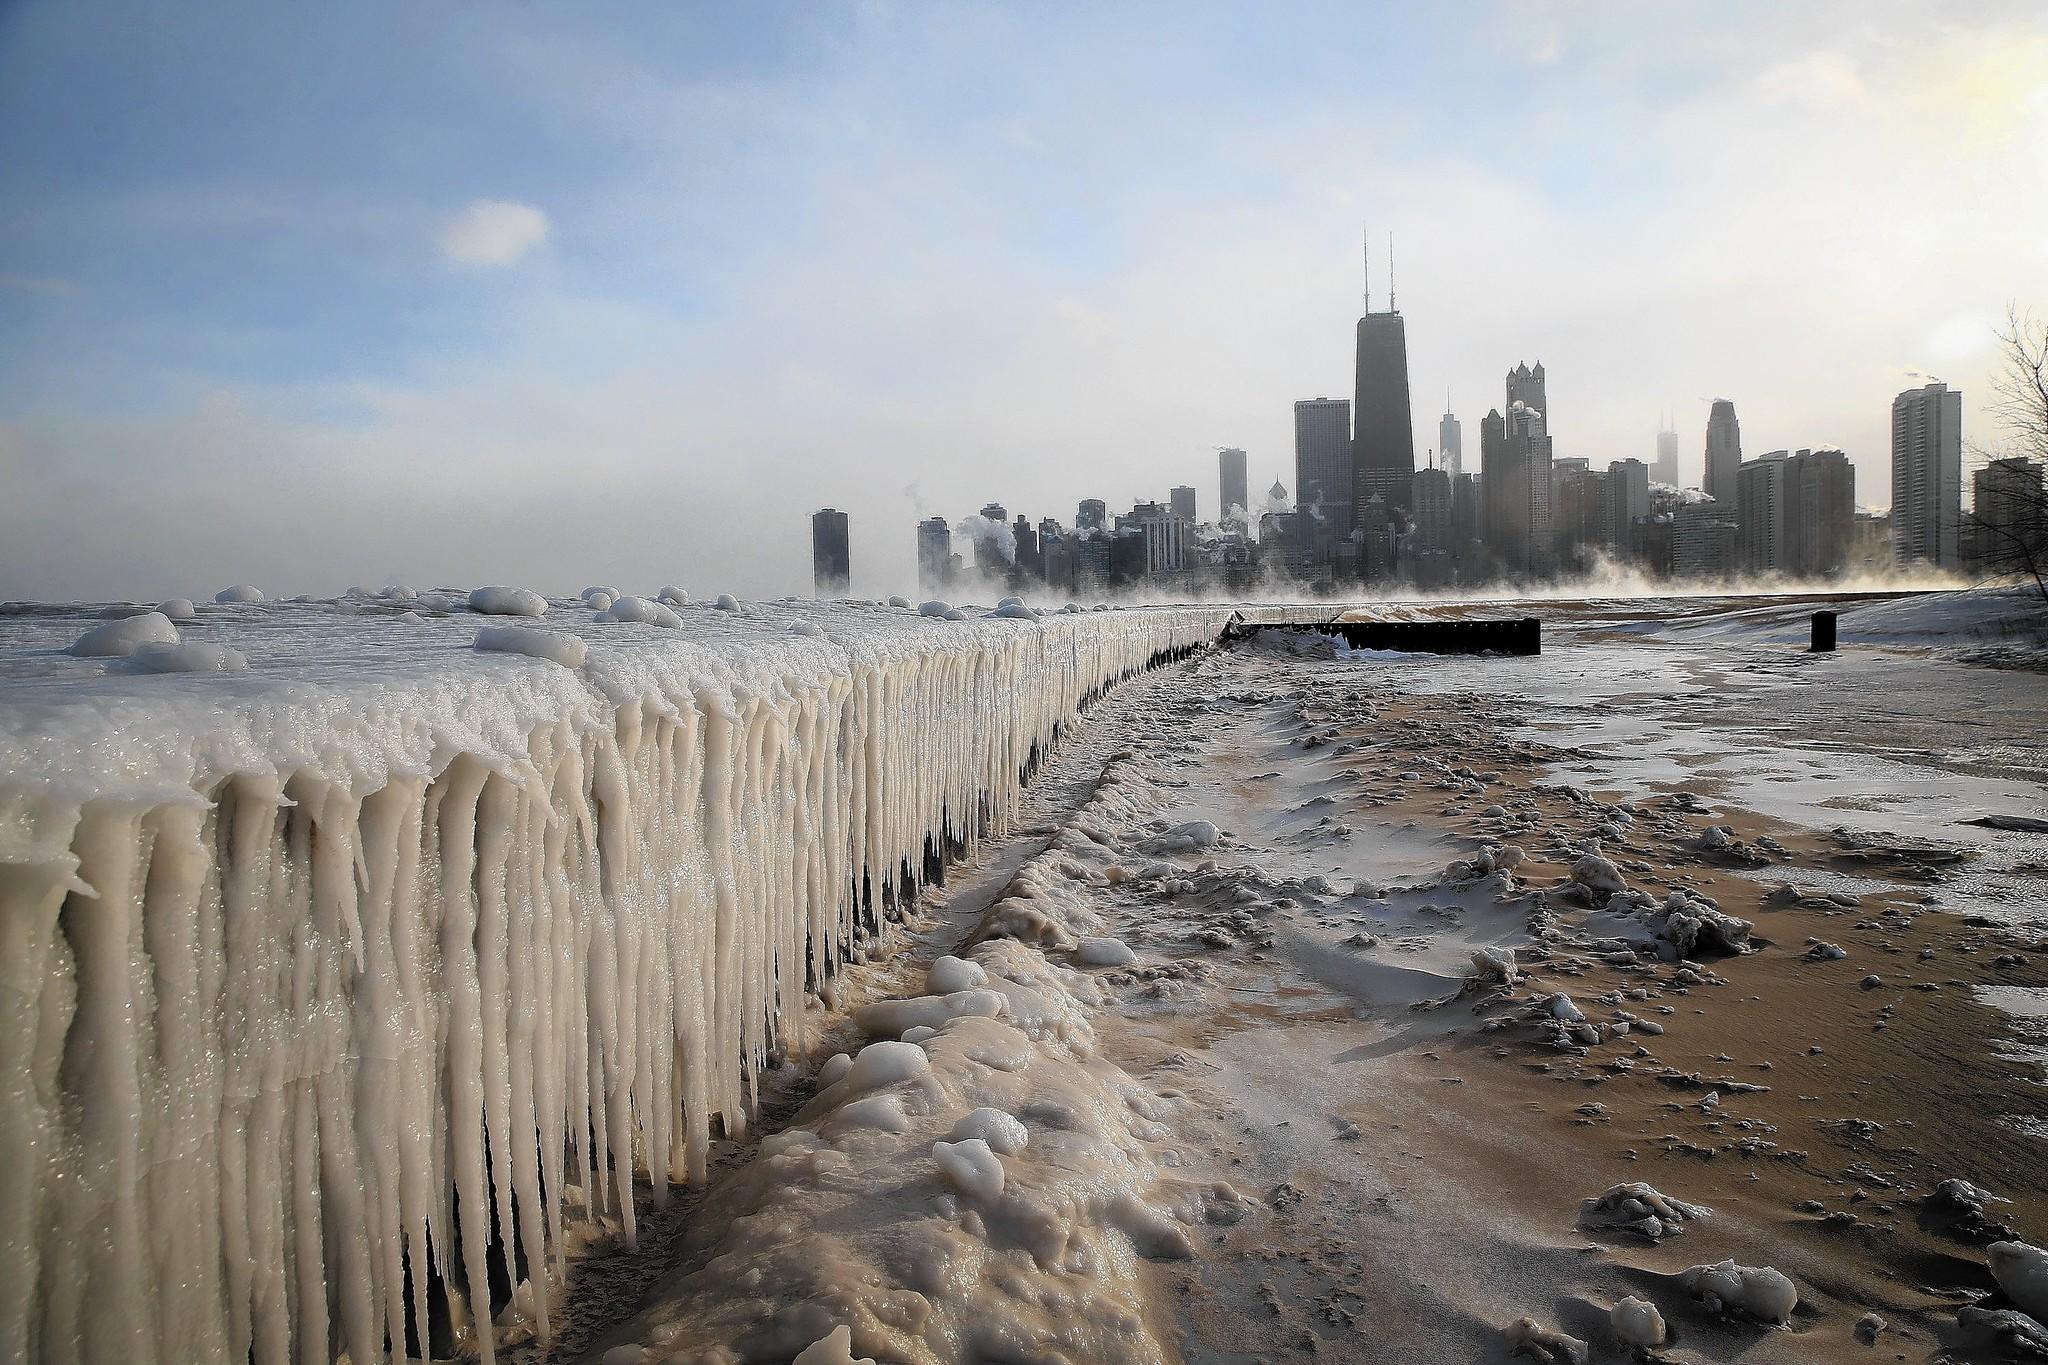 RÃ©sultat de recherche d'images pour "chicago polar vortex lake michigan"